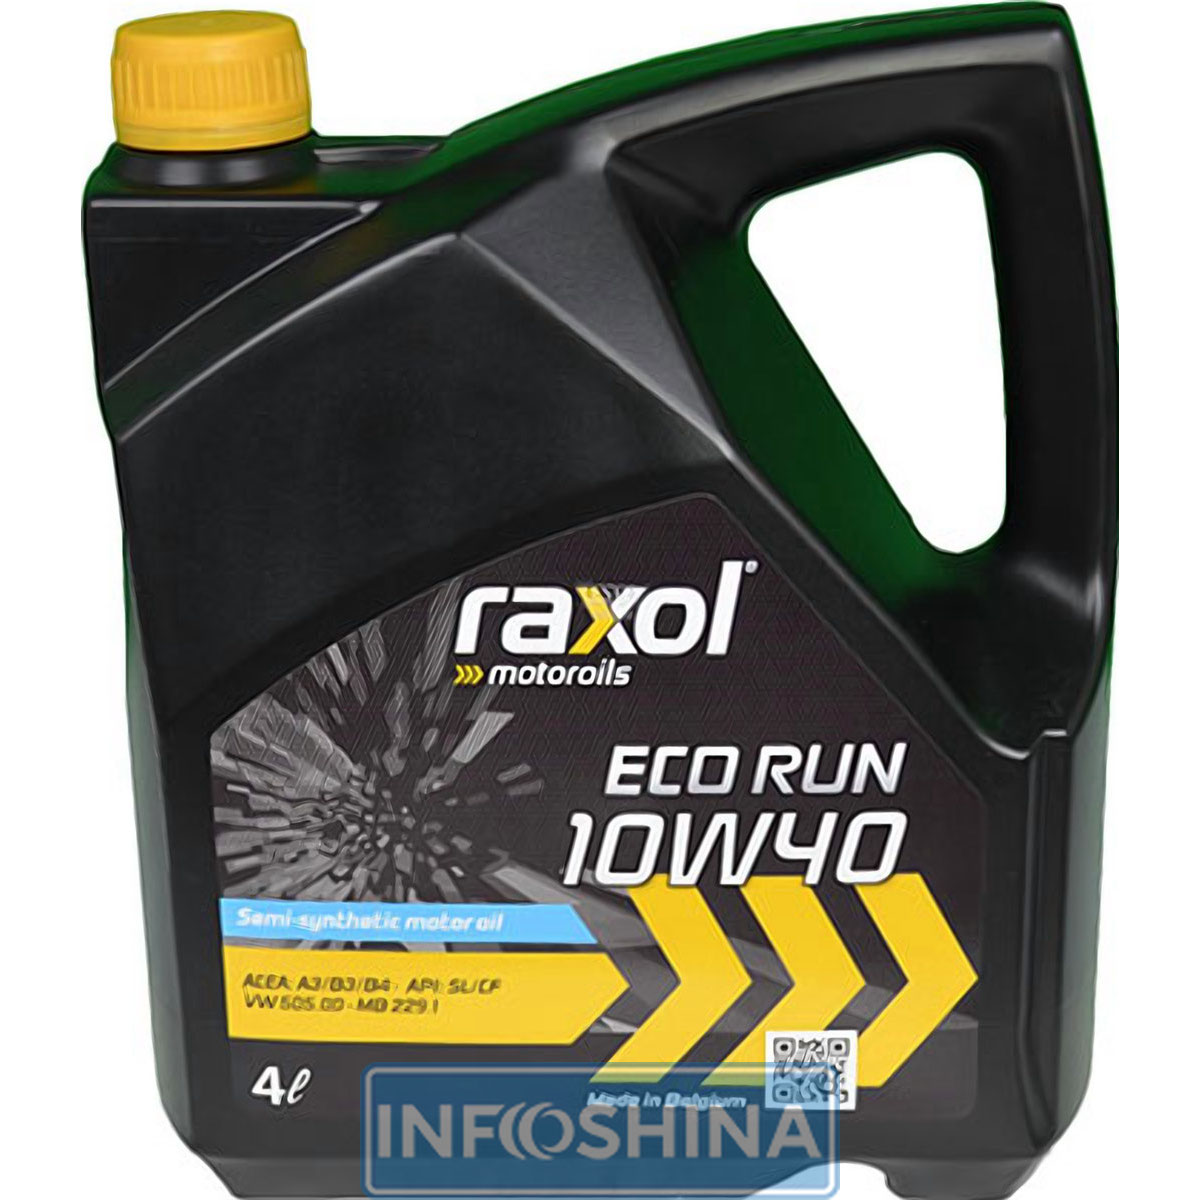 Купить масло Raxol Eco Run 10W-40 (4л)